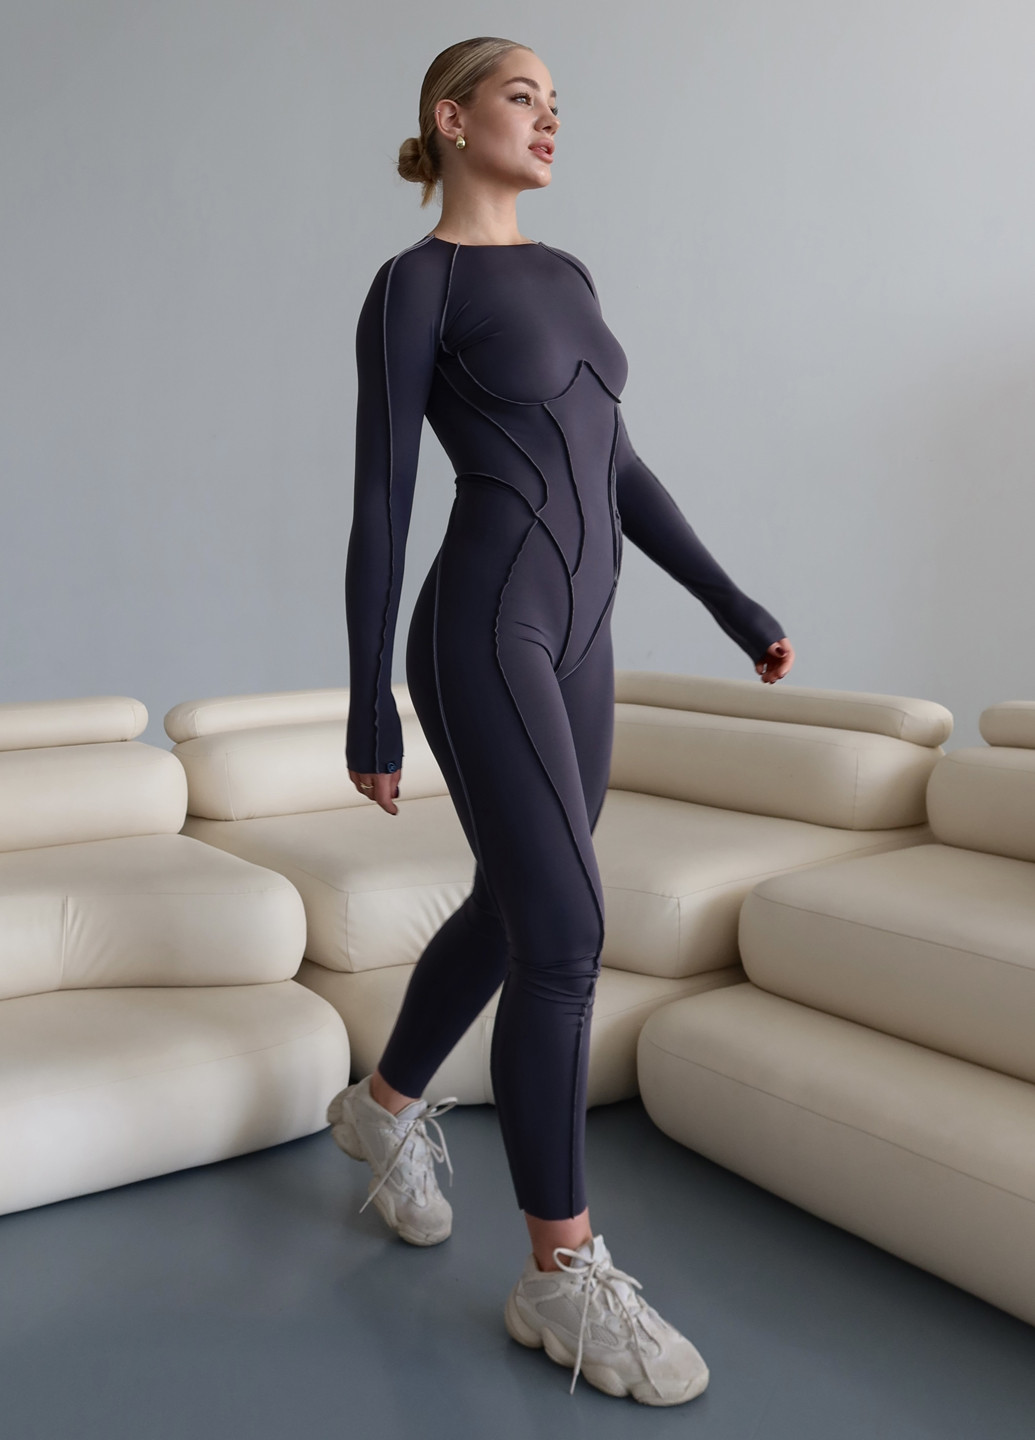 Комбинезон Asalart комбинезон-брюки однотонный графитовый спортивный нейлон, трикотаж